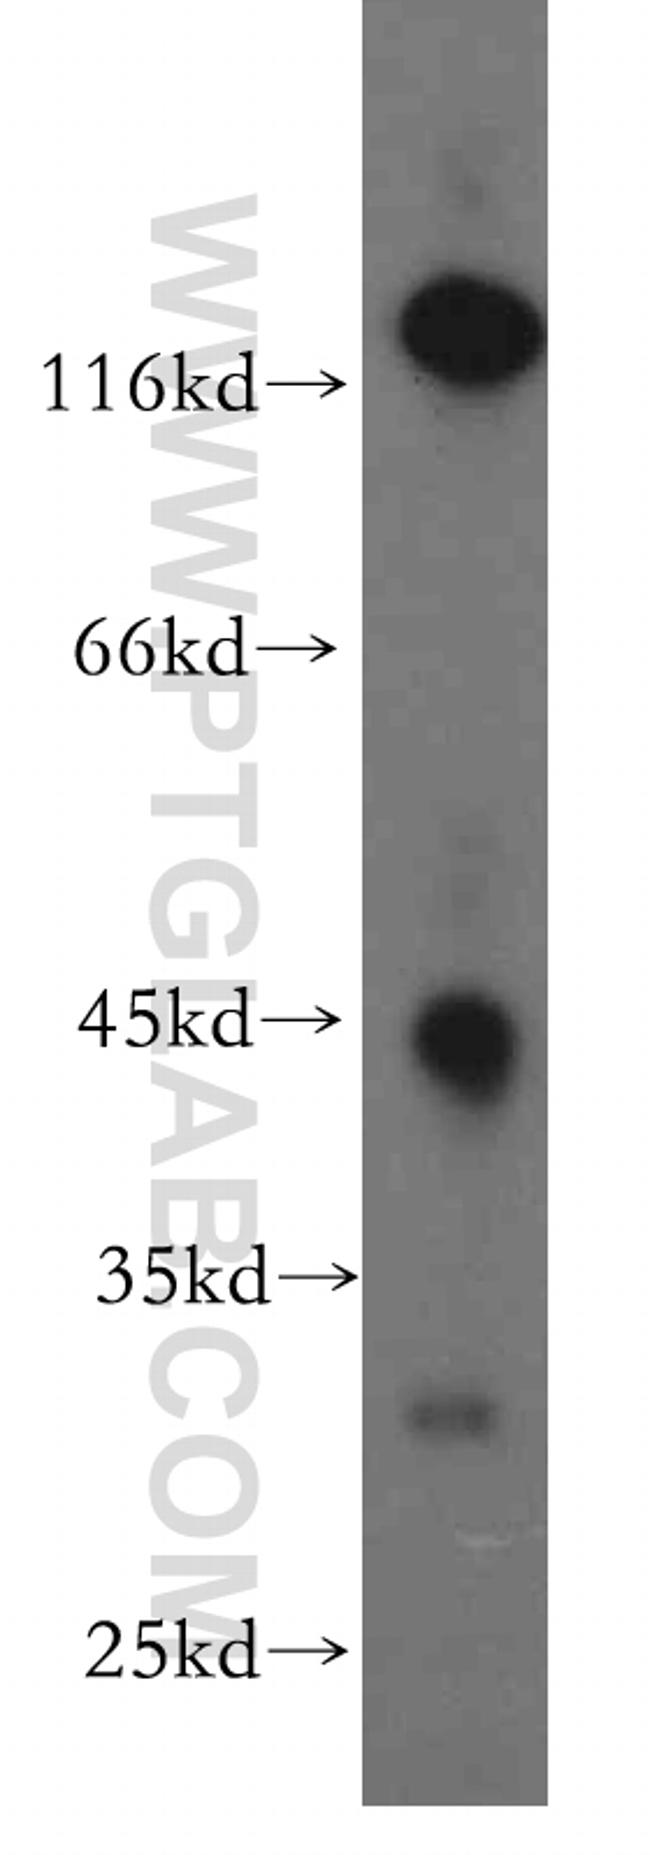 SIRT7 Antibody in Western Blot (WB)